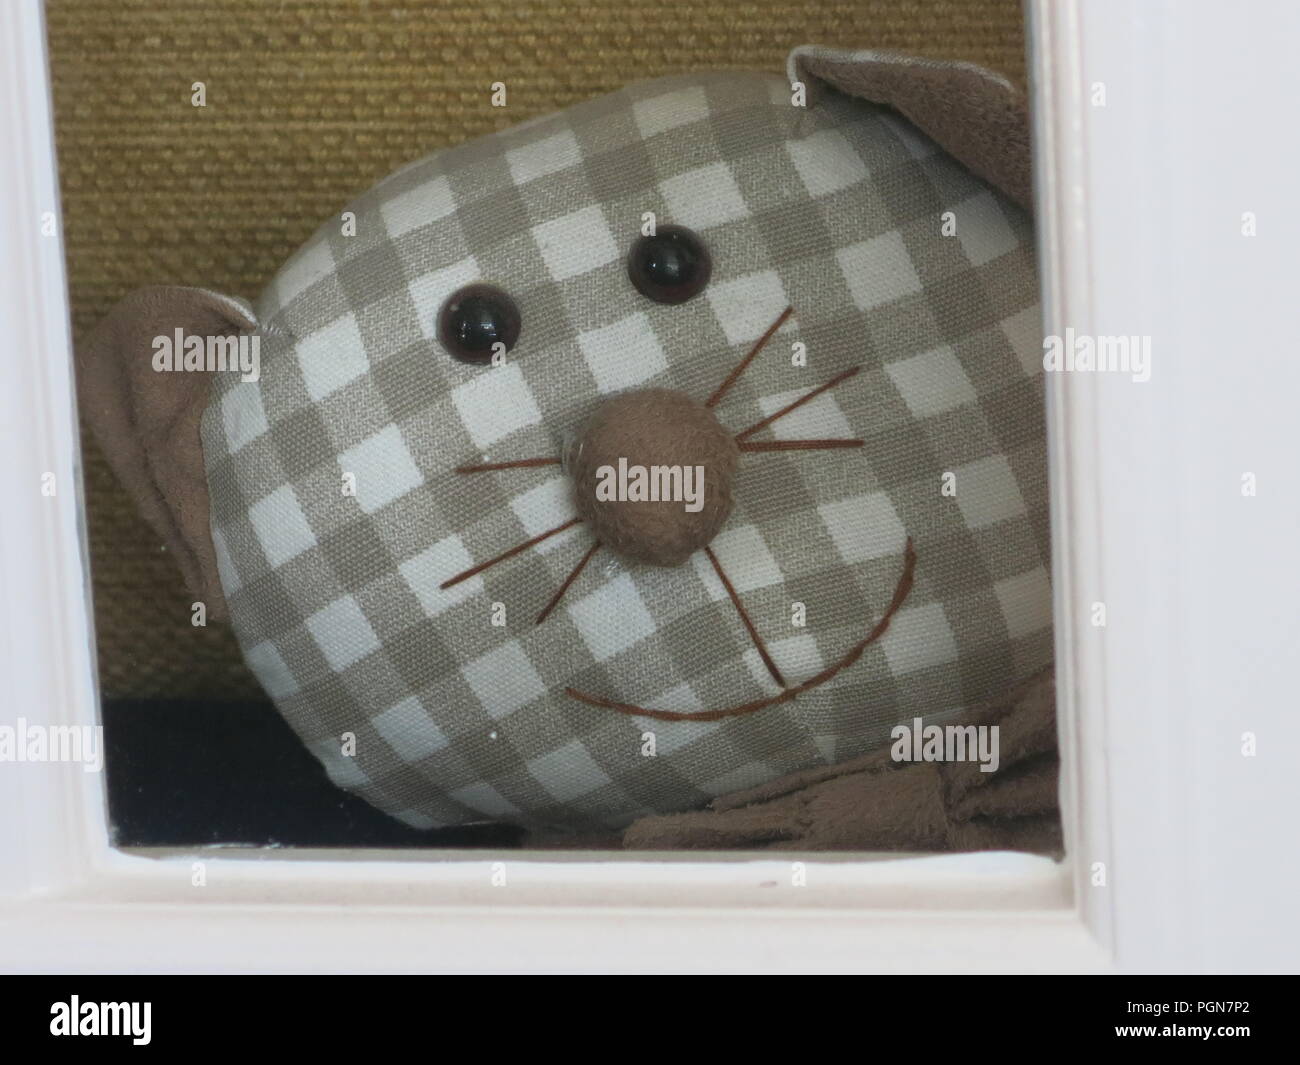 Cerca de una cara sonriente, feliz y bigotes sobre esta tela cat realizados en un tejido de tela de algodón a cuadros, como compañeros, a través de la puerta. Foto de stock